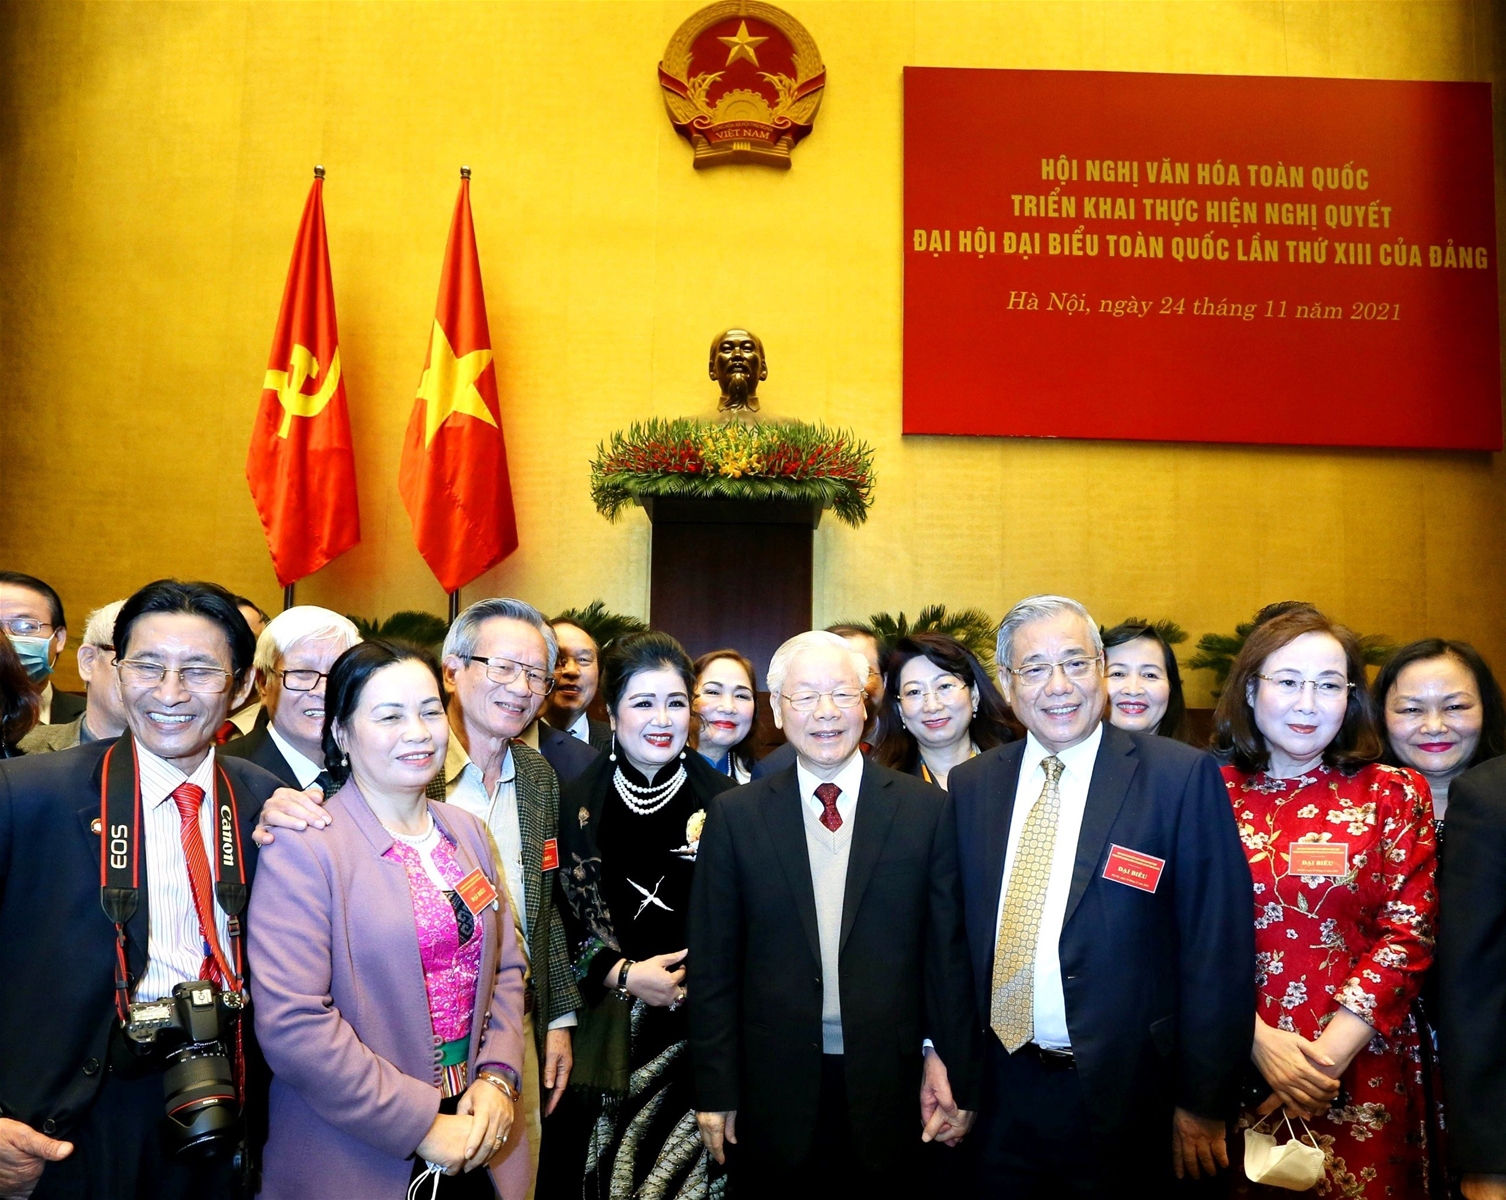 Nhà văn hóa lớn, hết lòng vì sự phát triển của nền văn hóa Việt Nam